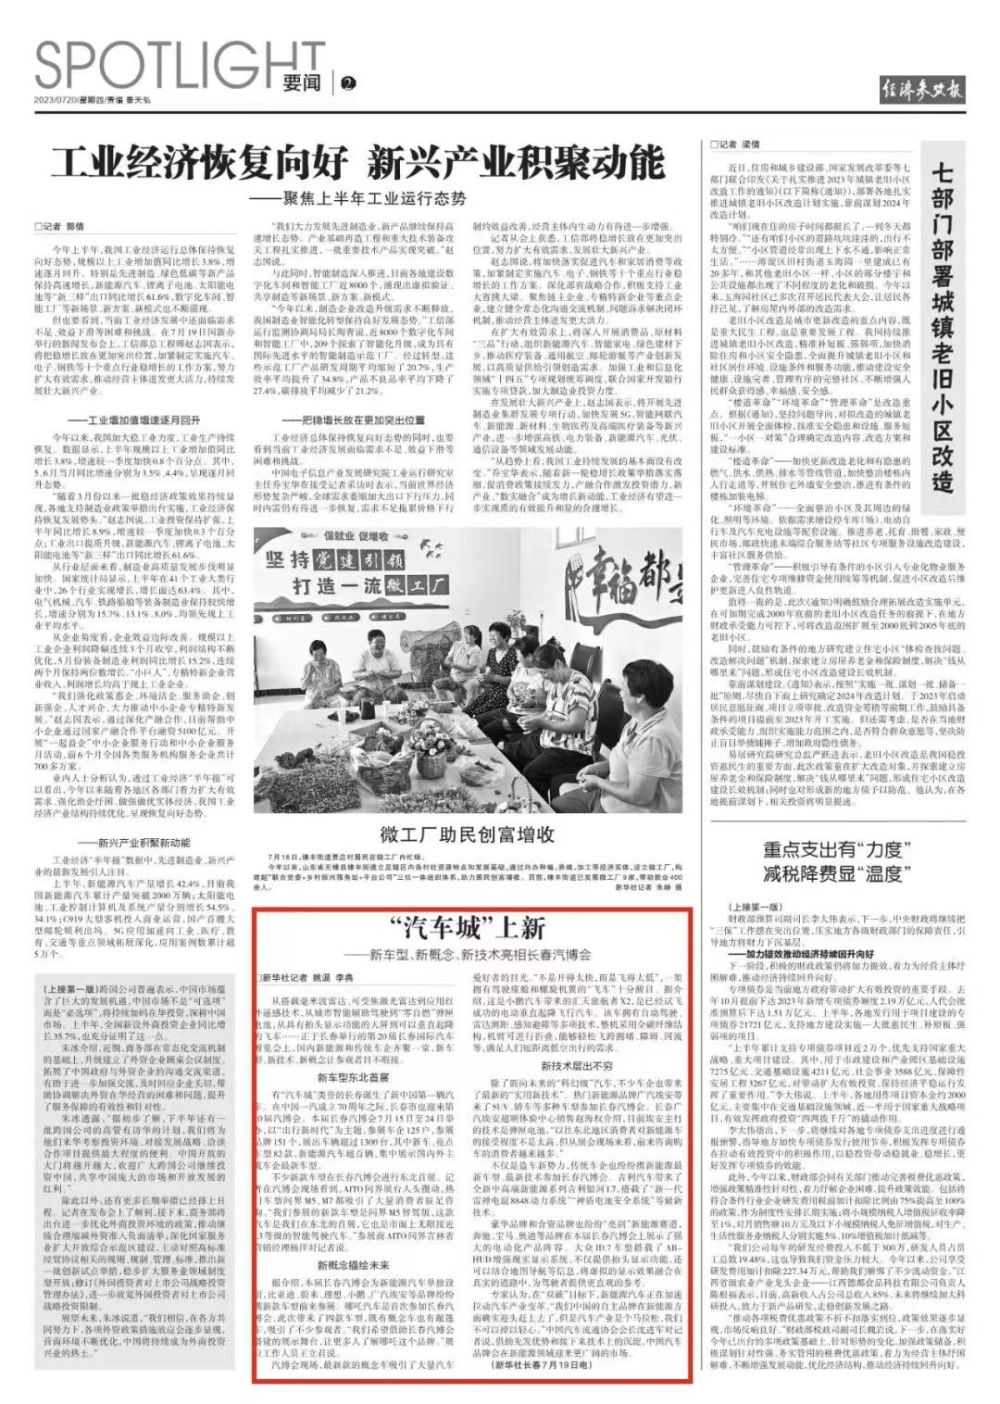 新华社《经济参考报》关注长春汽博